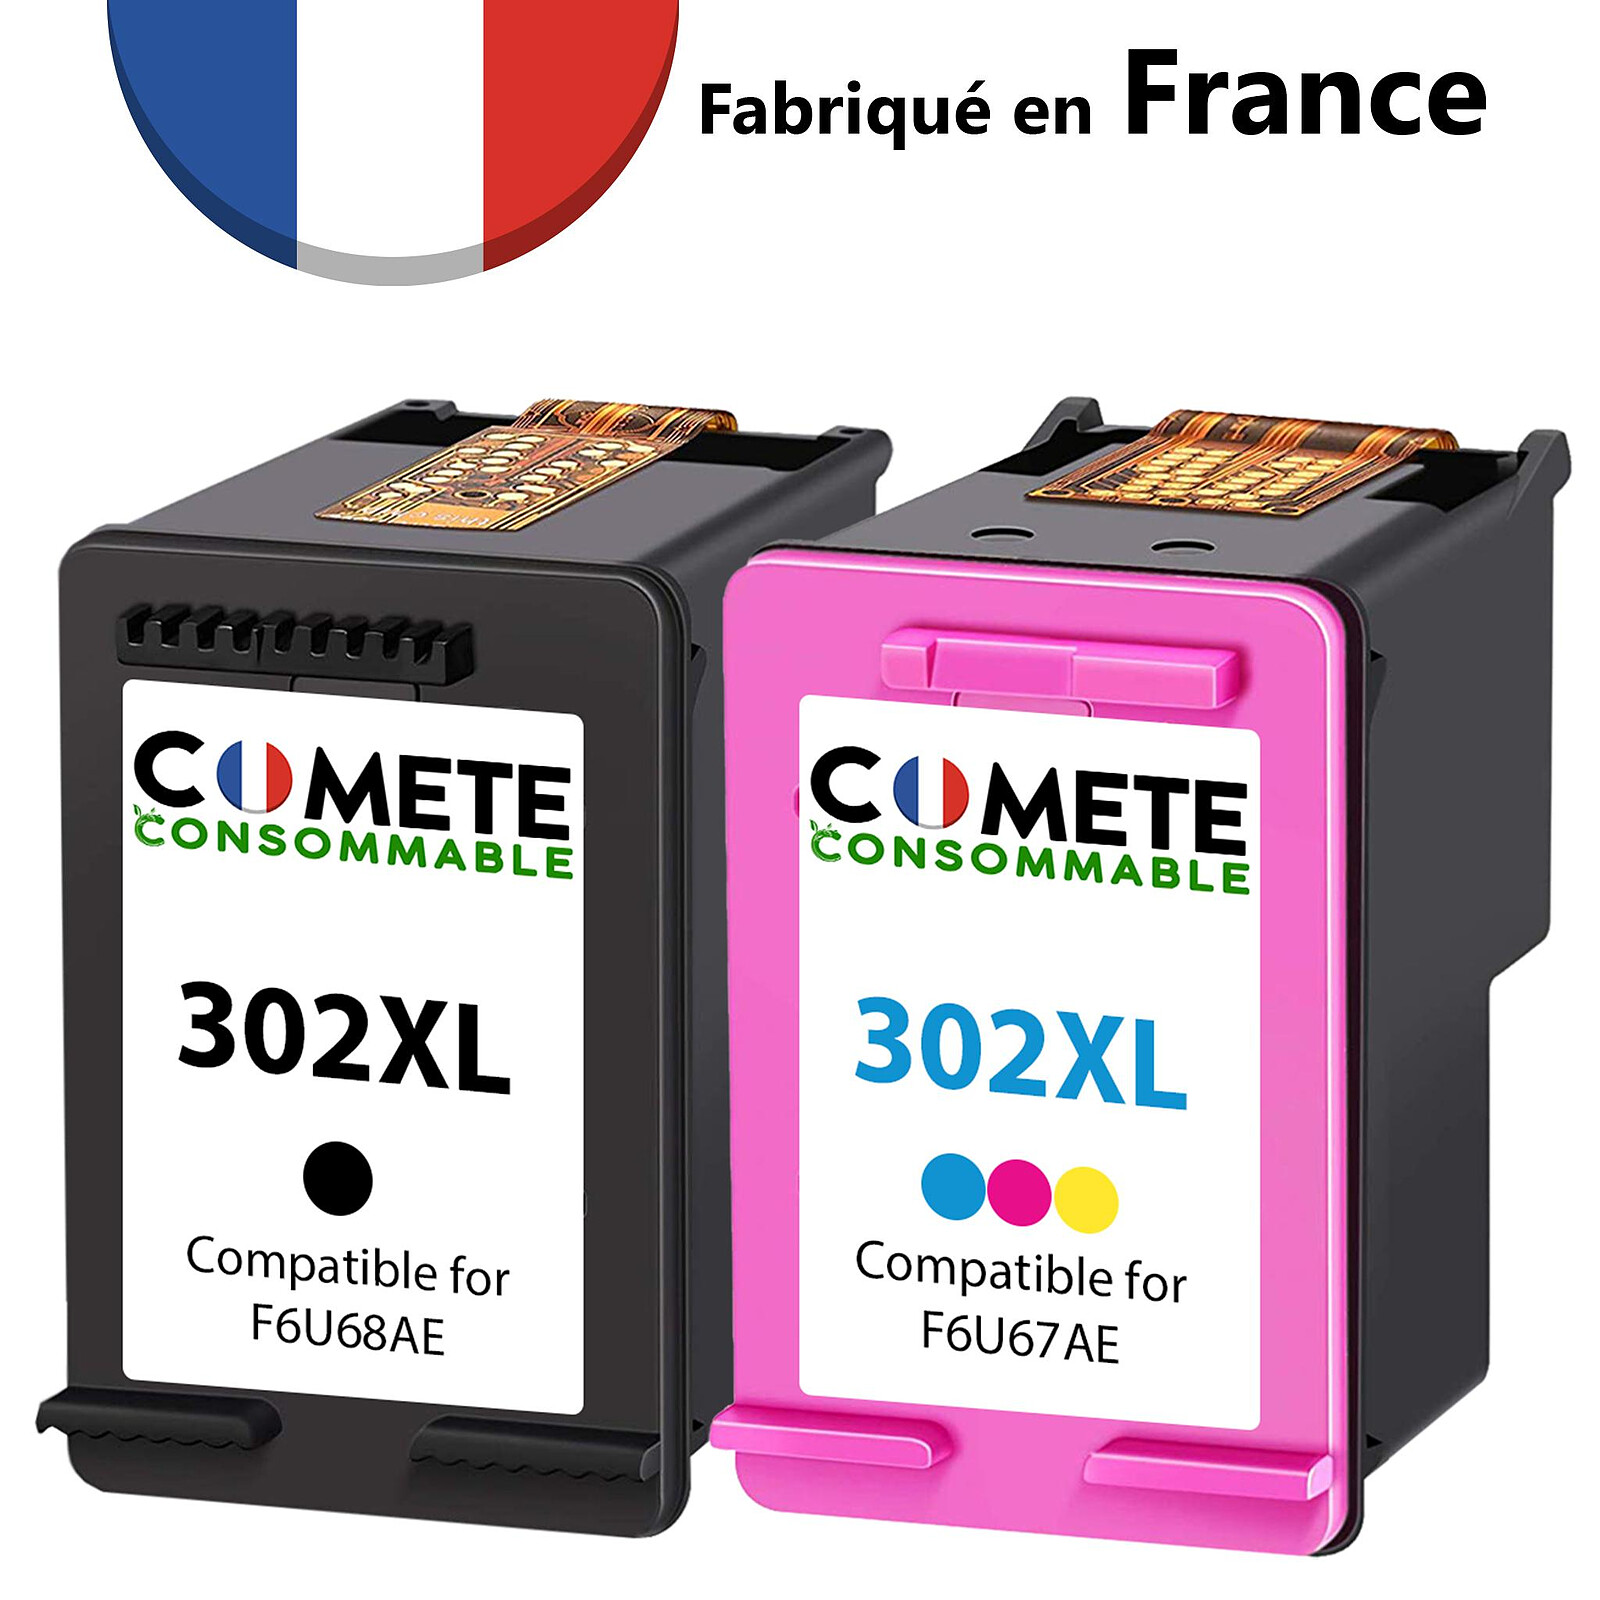 COMETE - HP 302XL - 2 Cartouches compatibles HP 302XL - 1 Noir + 1 Couleurs  - Marque française - Cartouche imprimante - LDLC